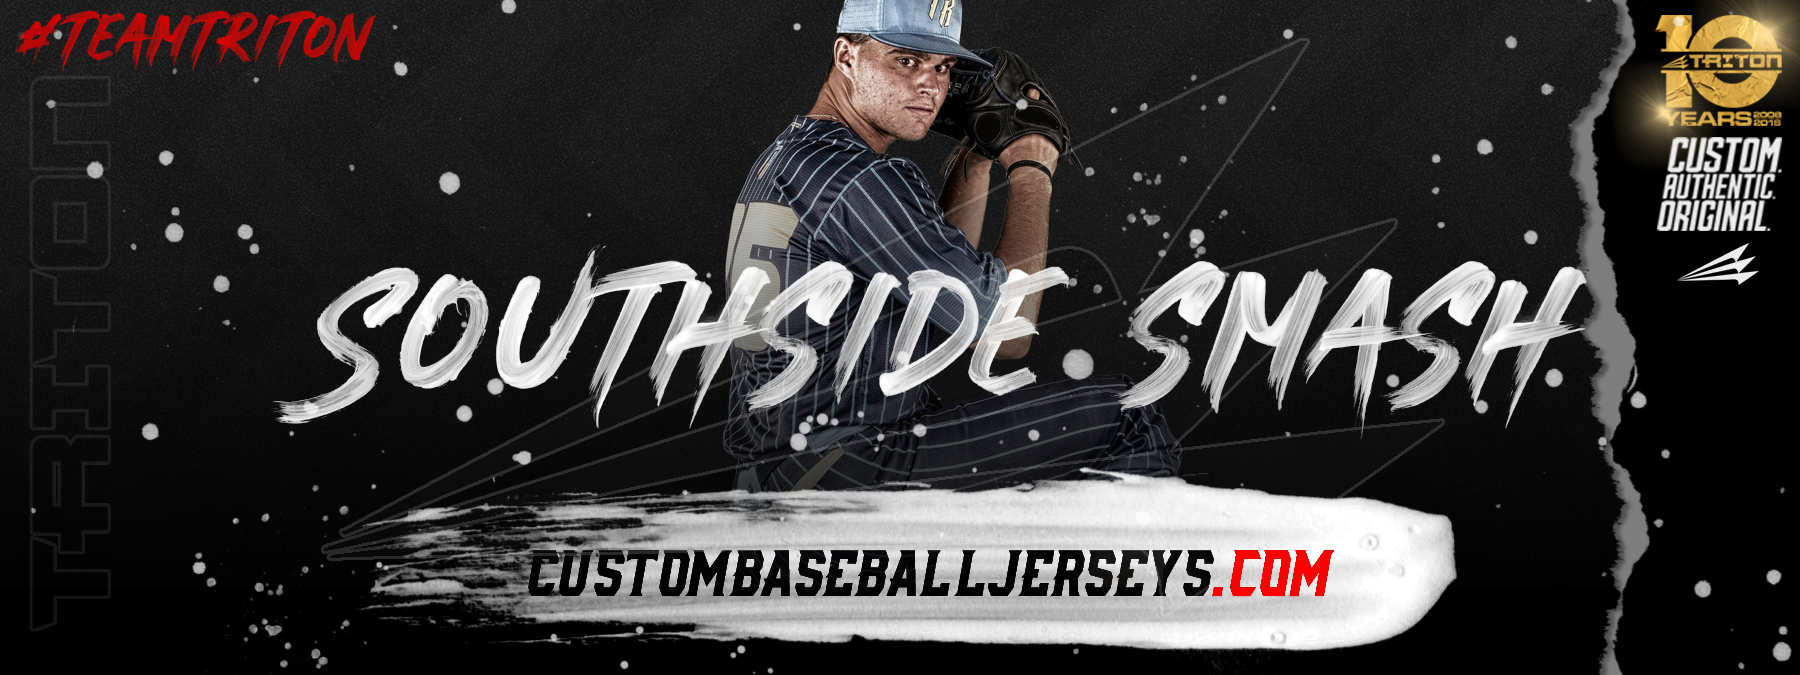 Southside Smash Custom Patriotic Baseball Jerseys